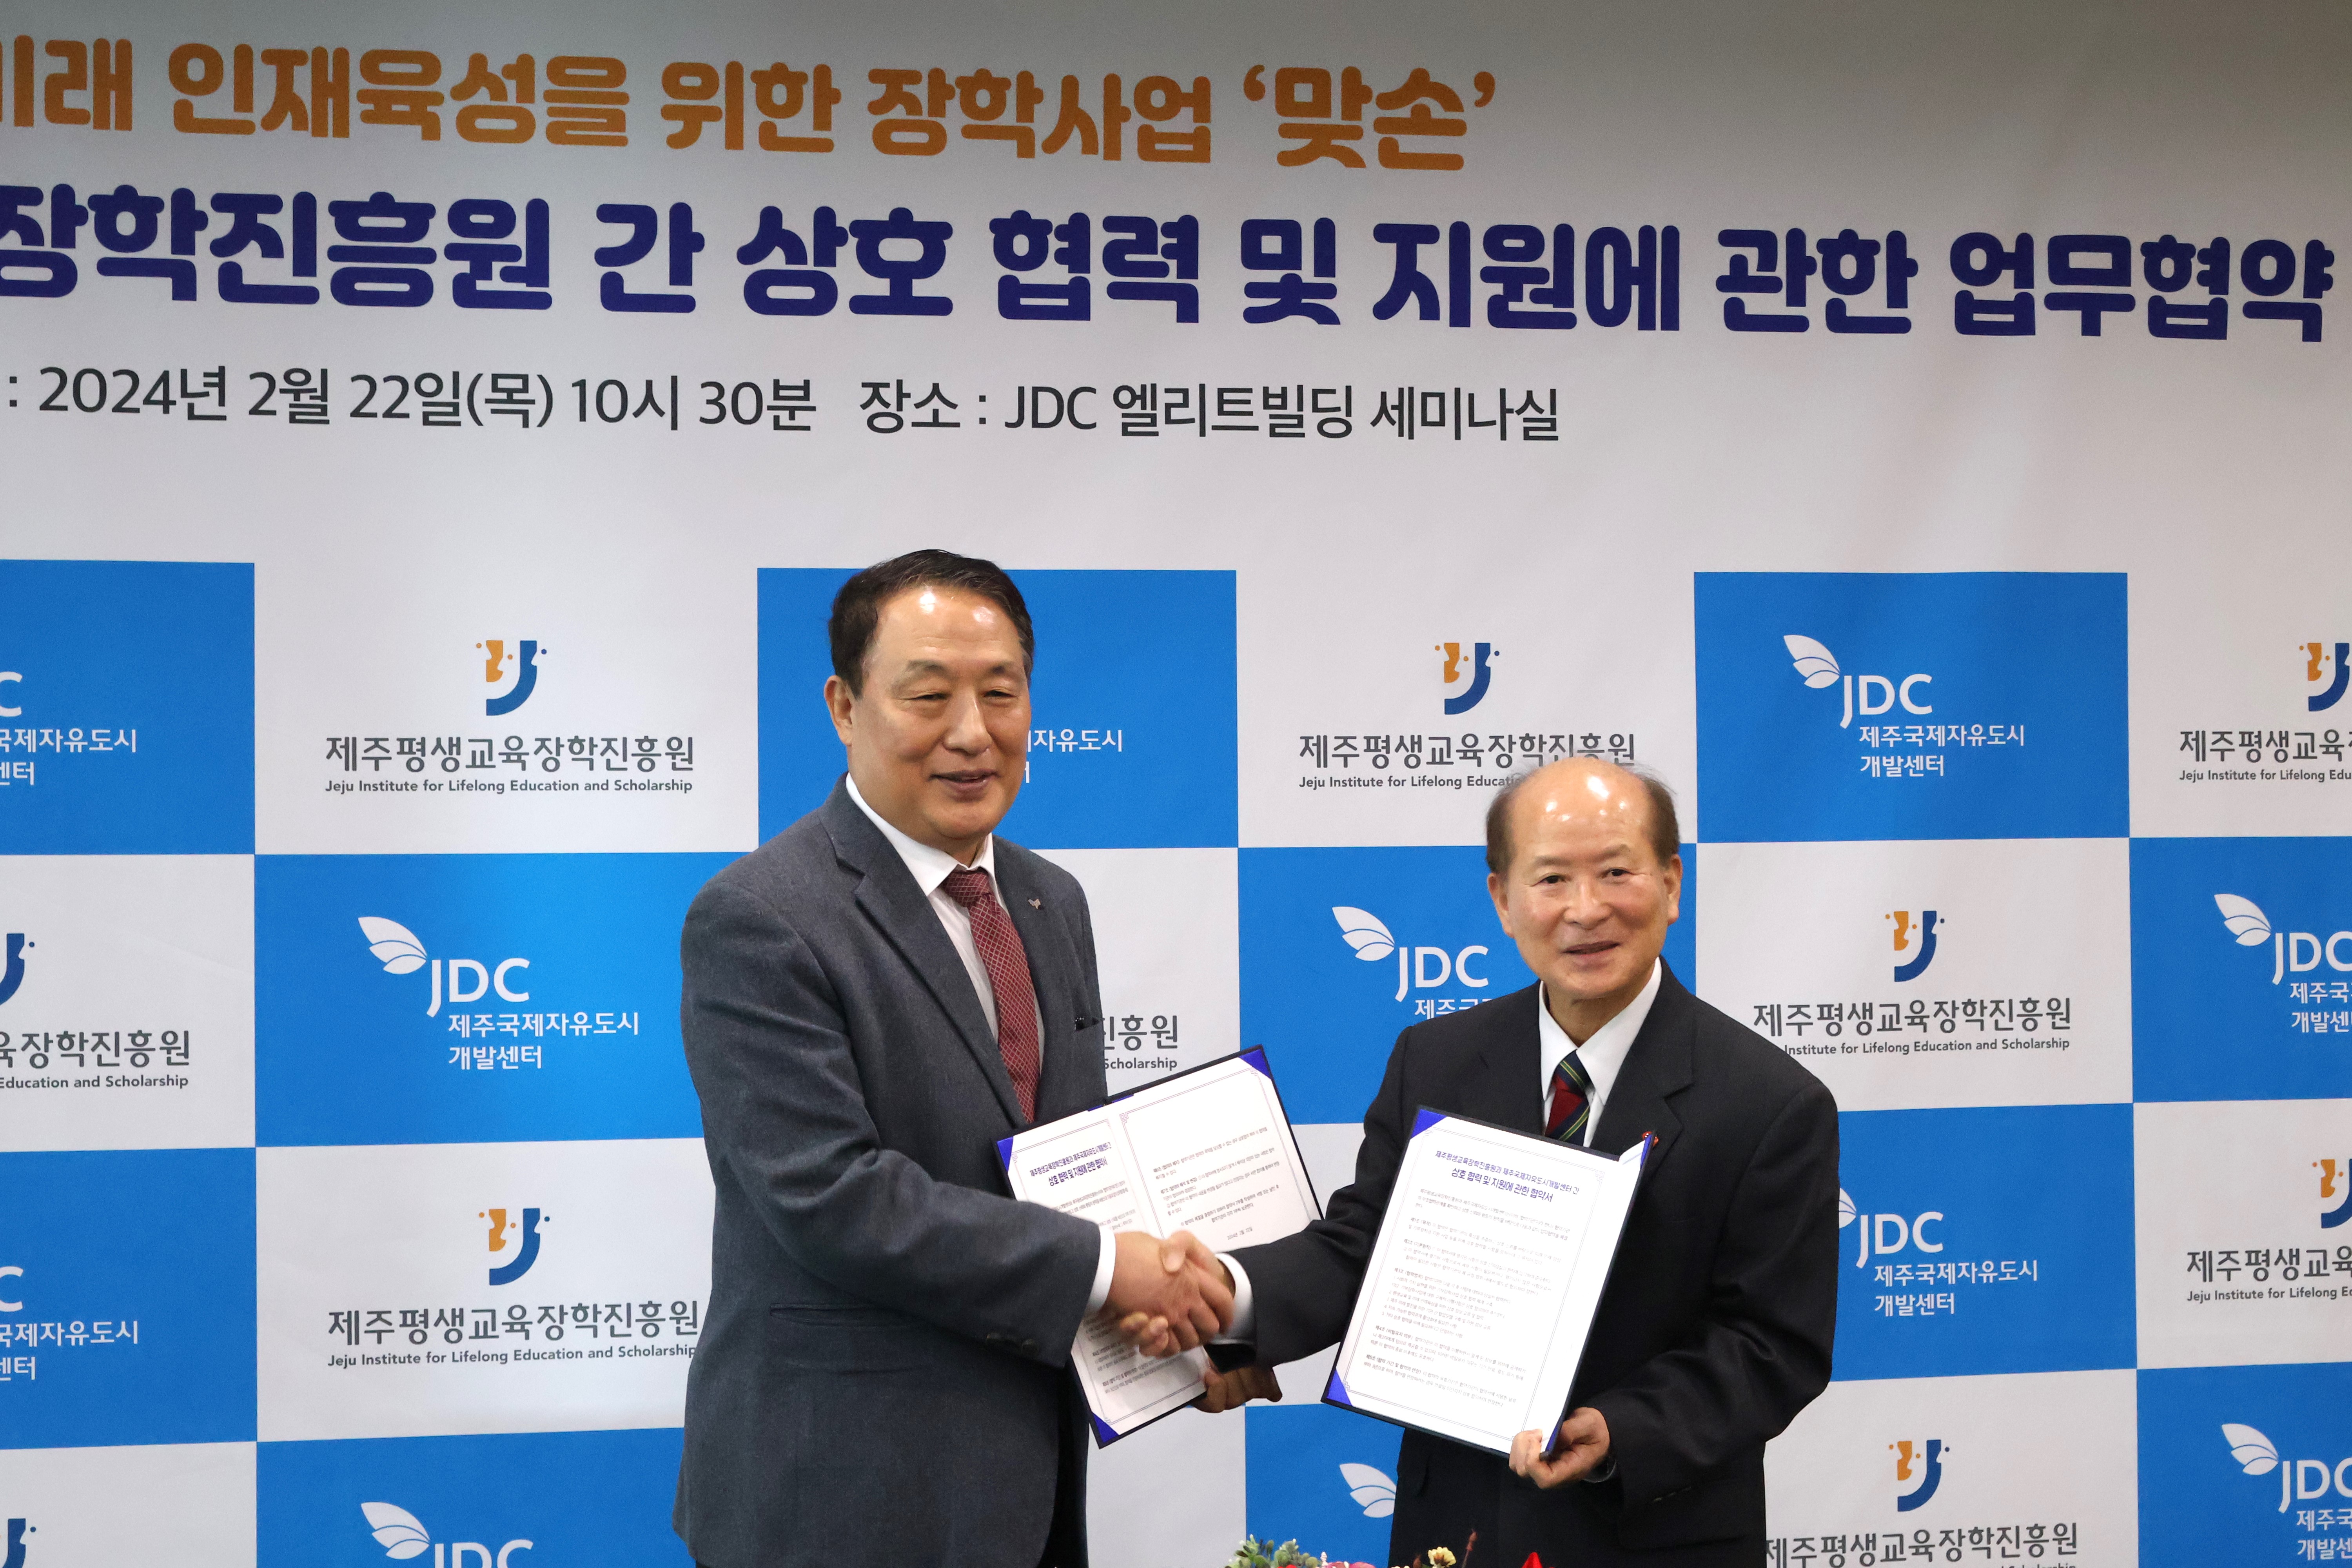 (재)제주평생교육장학진흥원-제주국제자유도시개발센터(JDC) 업무협약식 개최 #1